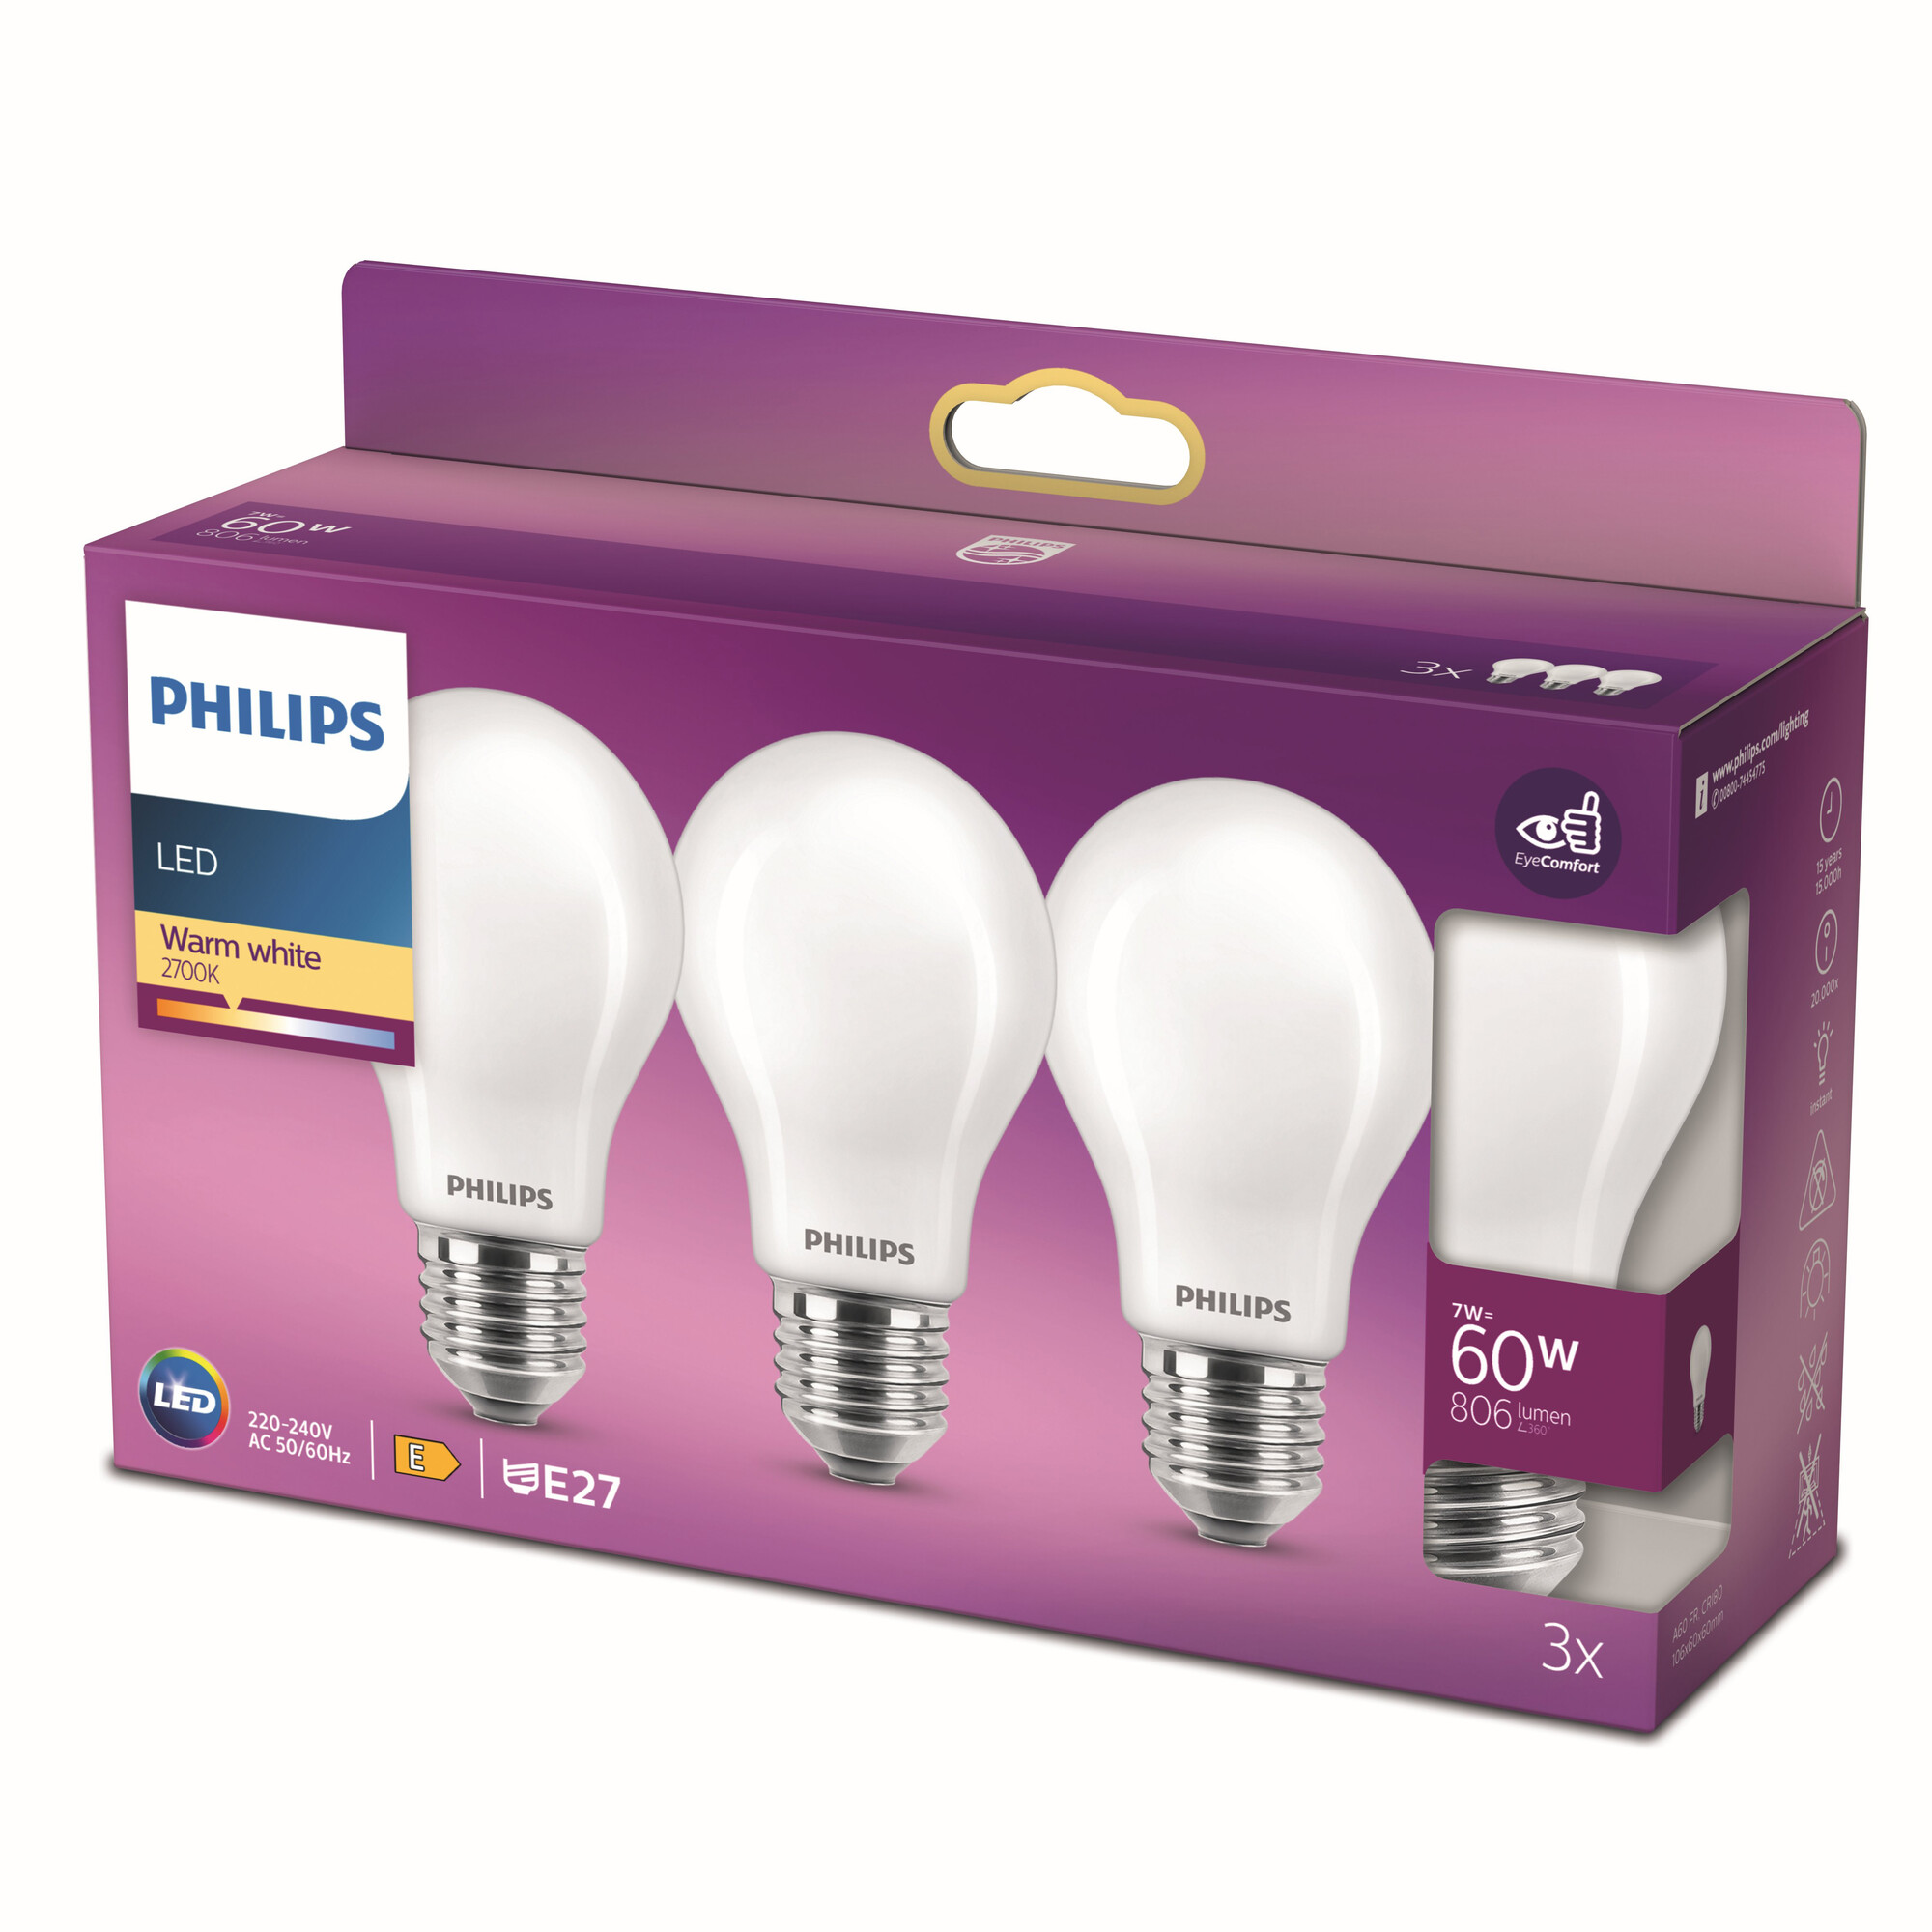 bijvoeglijk naamwoord Stuiteren Leeg de prullenbak Philips LED standaard lamp mat niet dimbaar (3-pack) - E27 A60 7W 806lm  2700K 230V